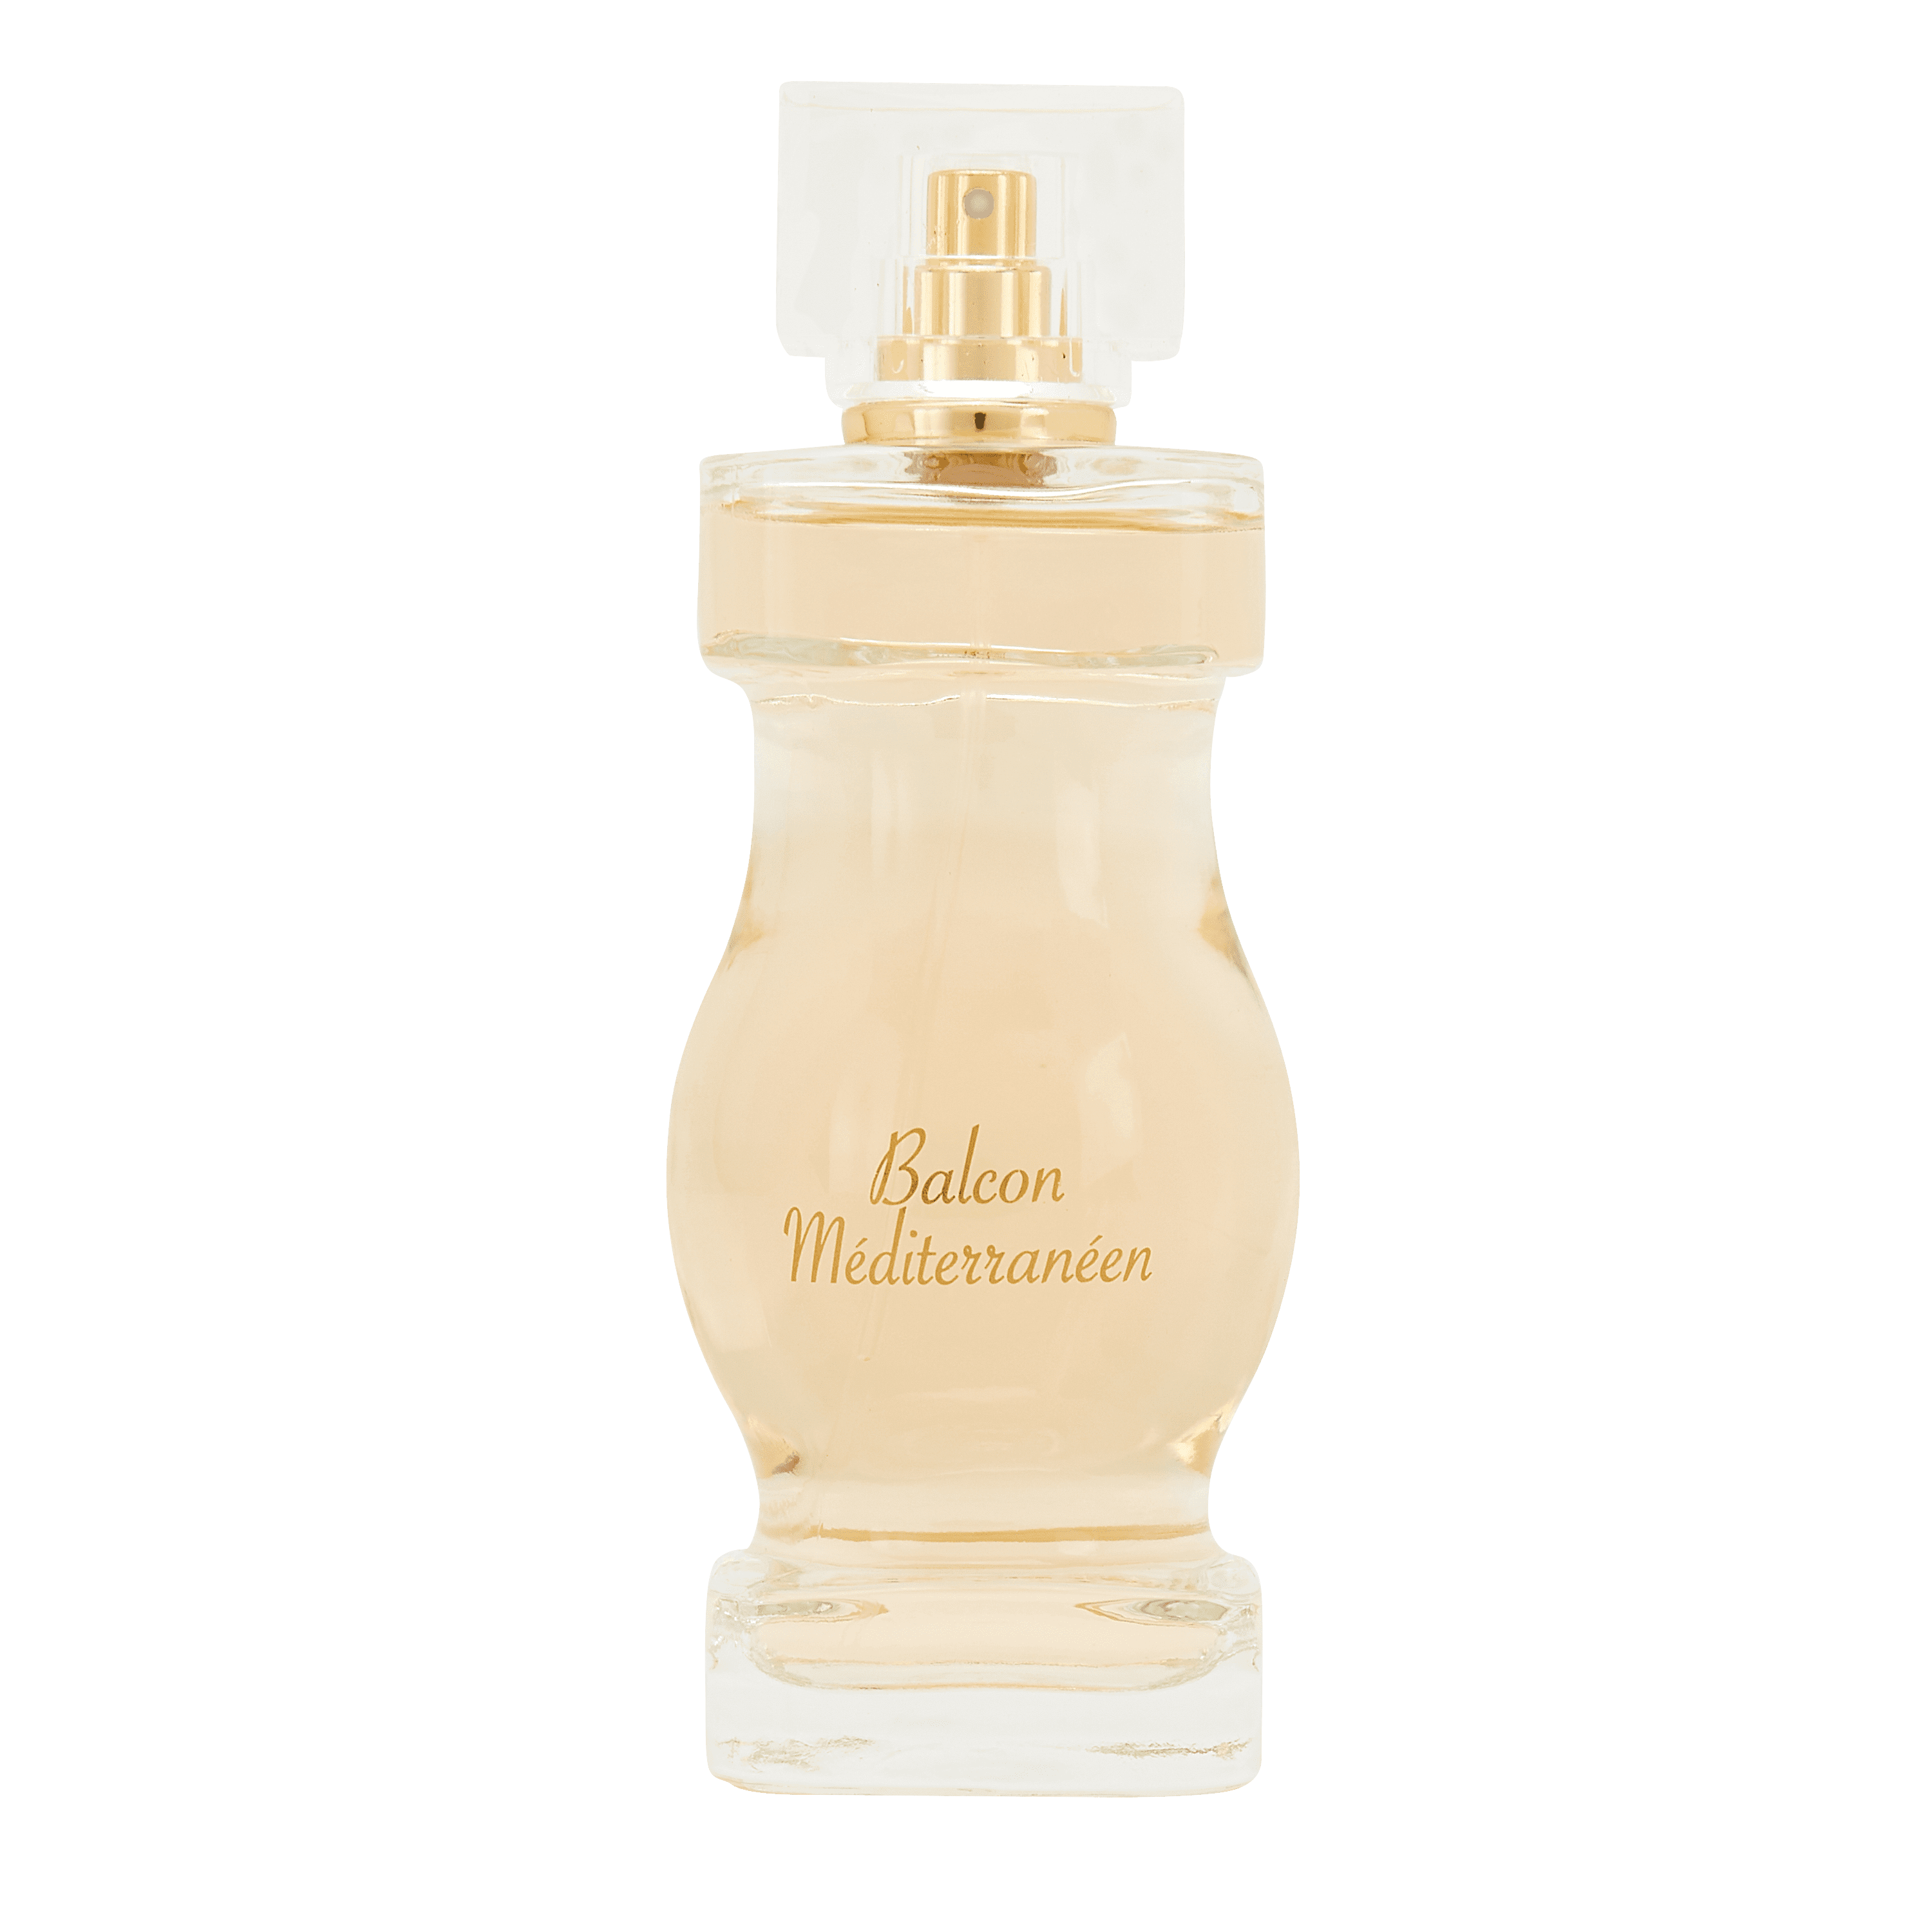 Женская парфюмированная вода Jean Arthes Balcon Mediterraneen, 100 мл mirada парфюмерная вода для женщин surf 100 мл